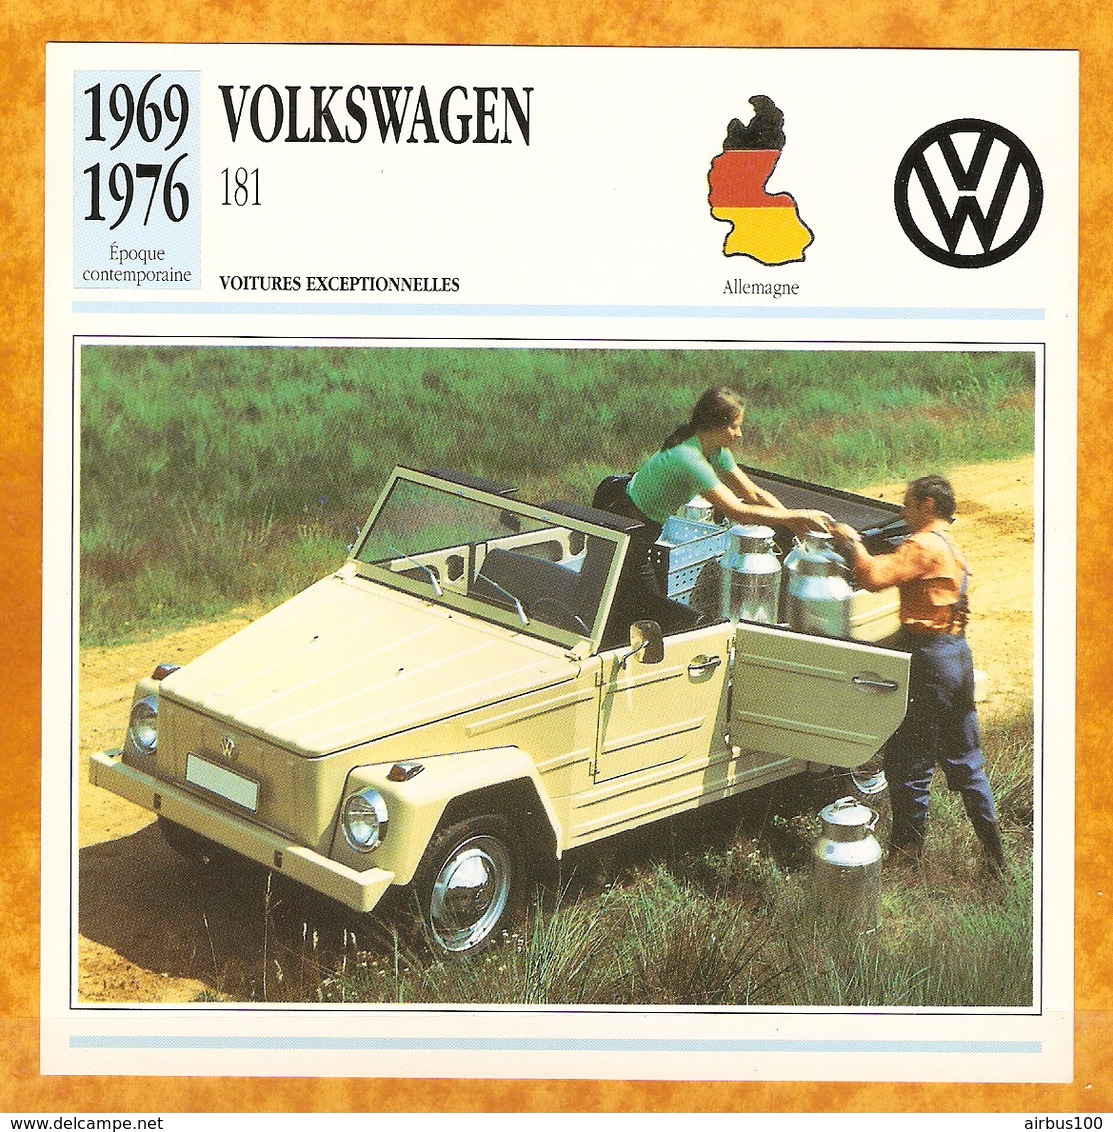 1969 ALLEMAGNE VIEILLE VOITURE VOLKSWAGEN 181 - GERMANY OLD CAR - ALEMANIA VIEJO COCHE - DEUTSCHLAND ALTES AUTO - Voitures